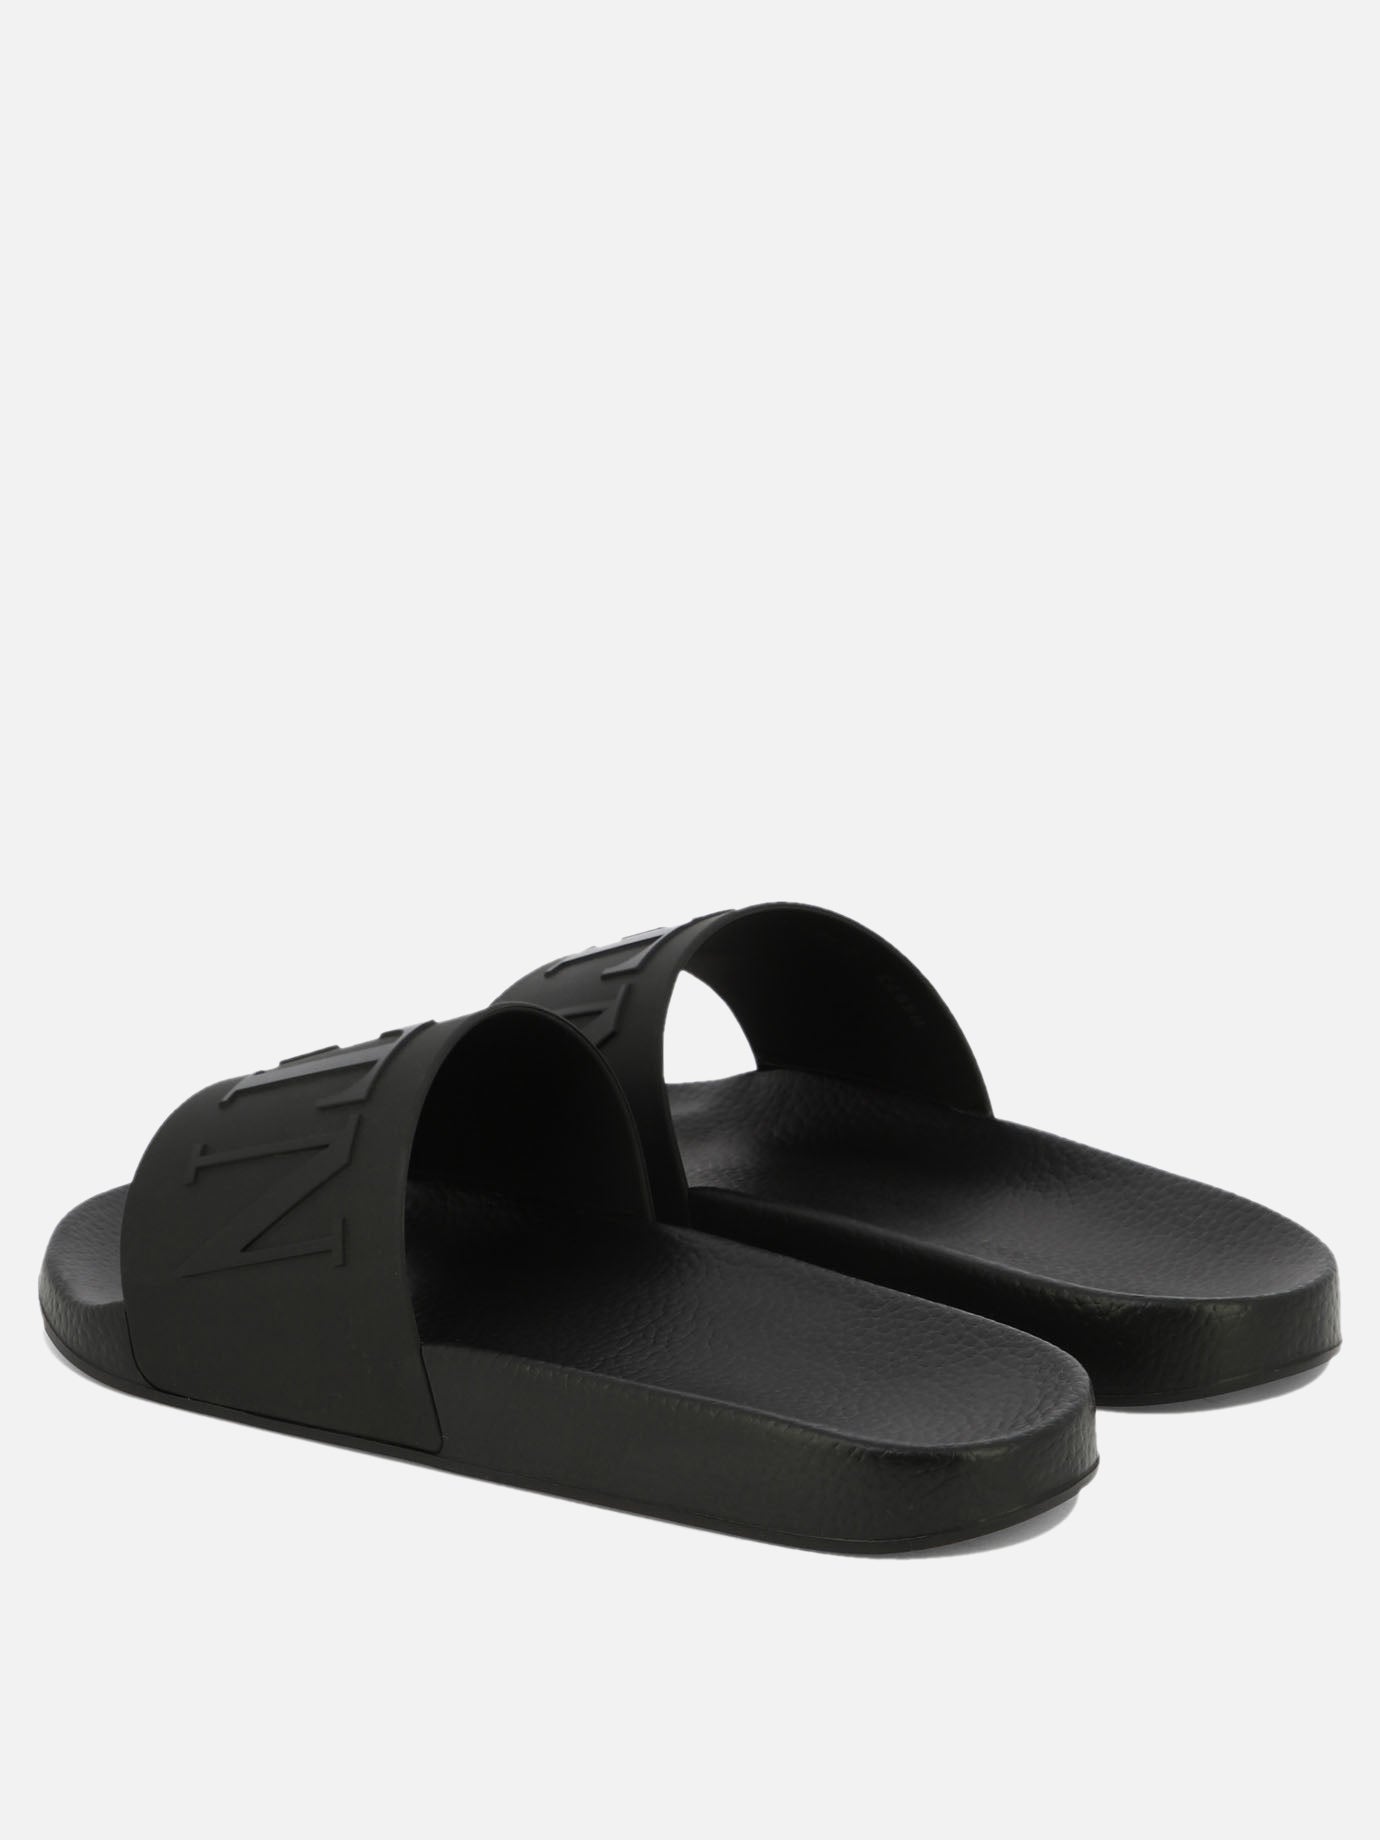 "VLogo" sandals